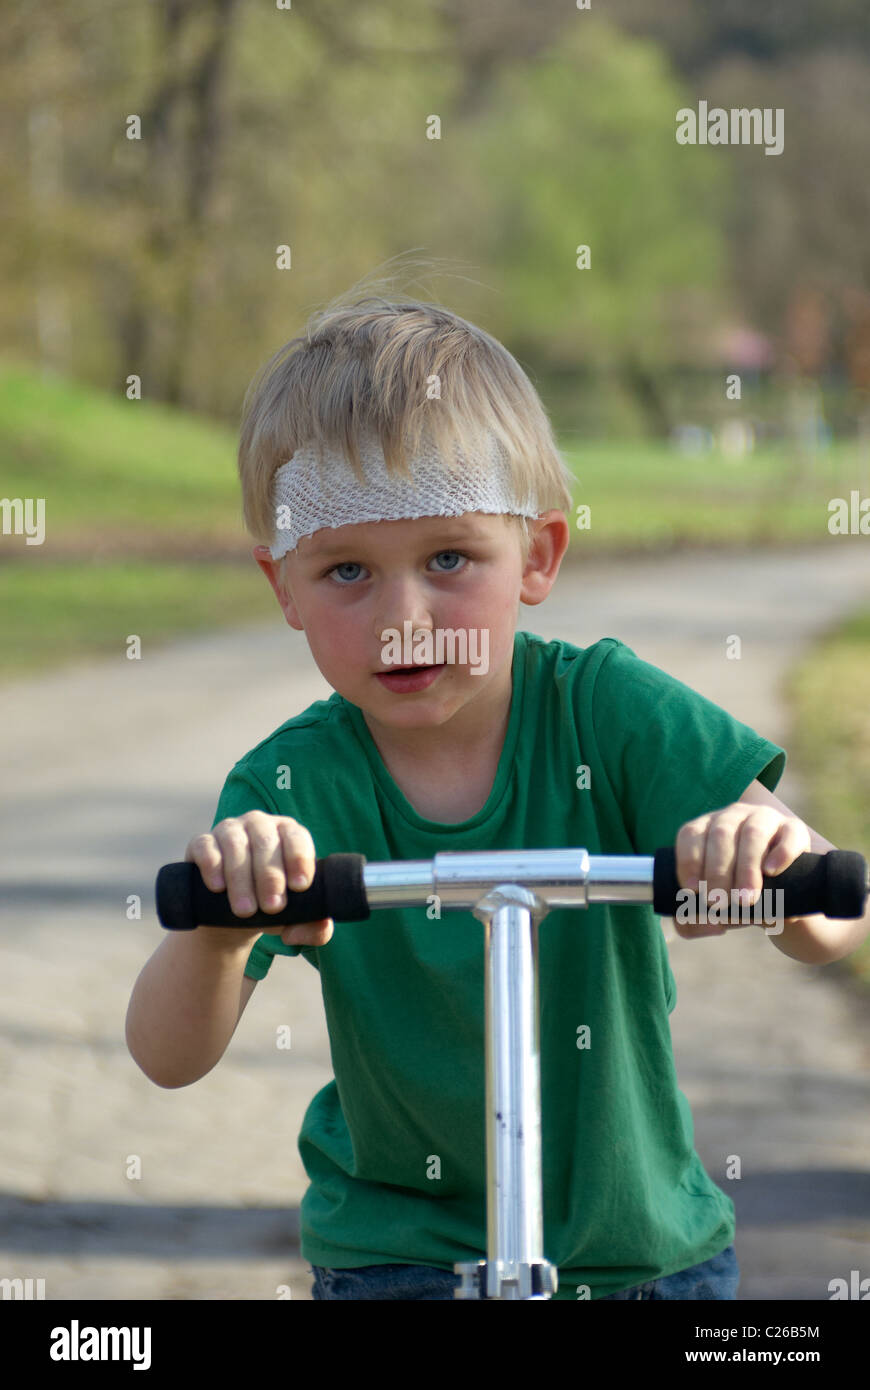 Un jeune enfant garçon blond sur un scooter dans parc avec tête blessée (bandage capeline) sans casque de sécurité Banque D'Images